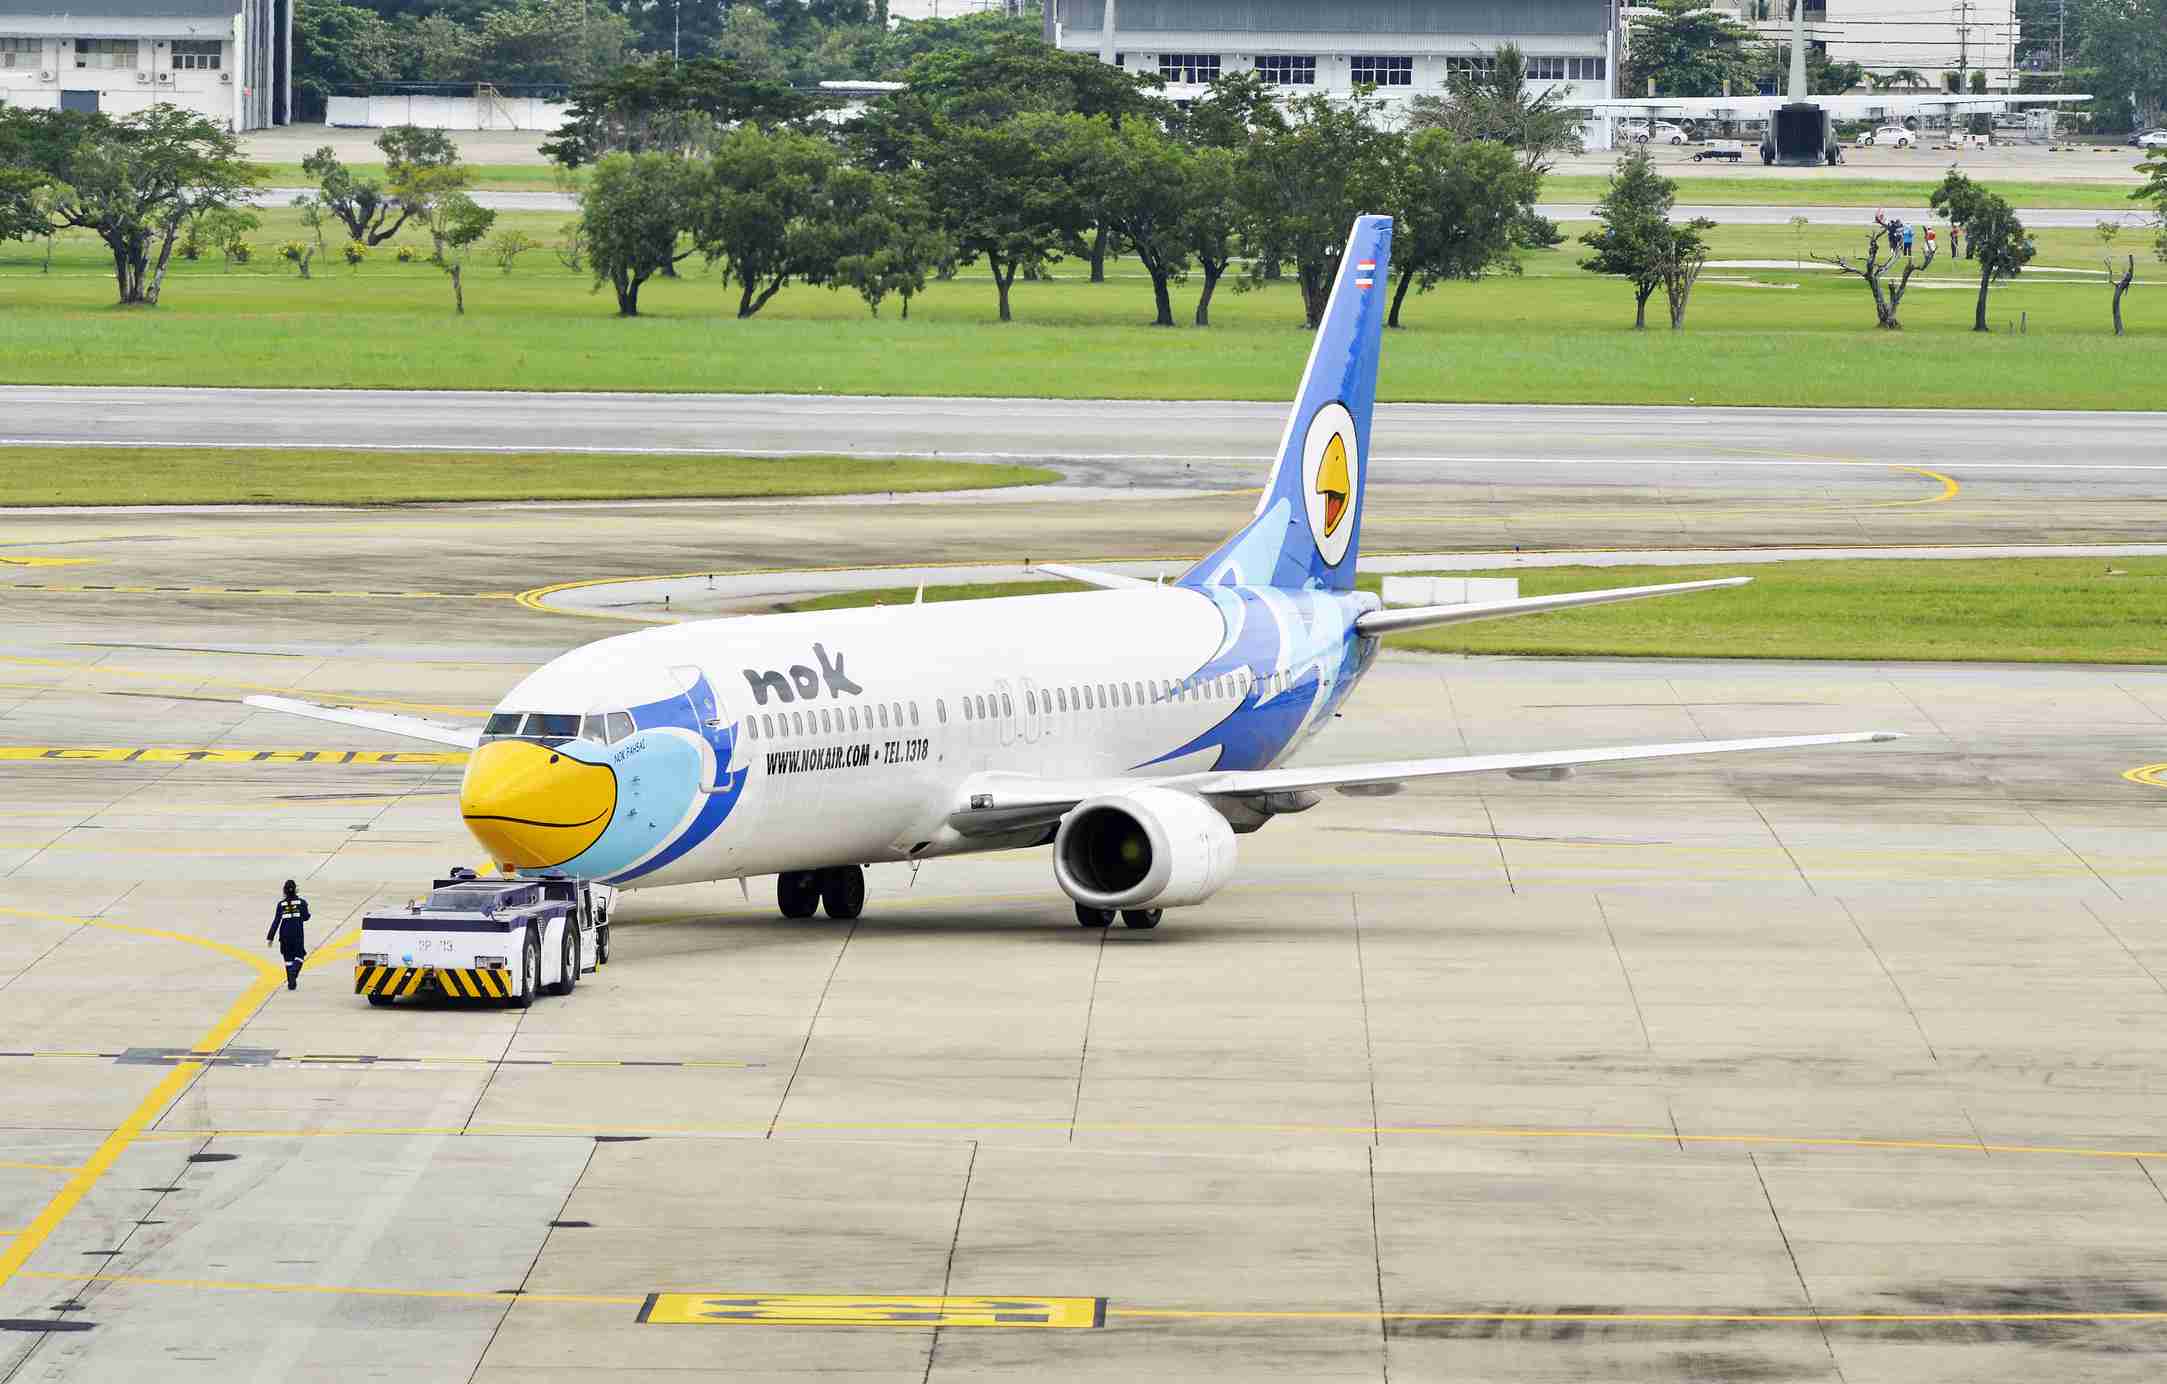 Список авиакомпаний таиландасодержание а также регулярные авиалинии [ править ]